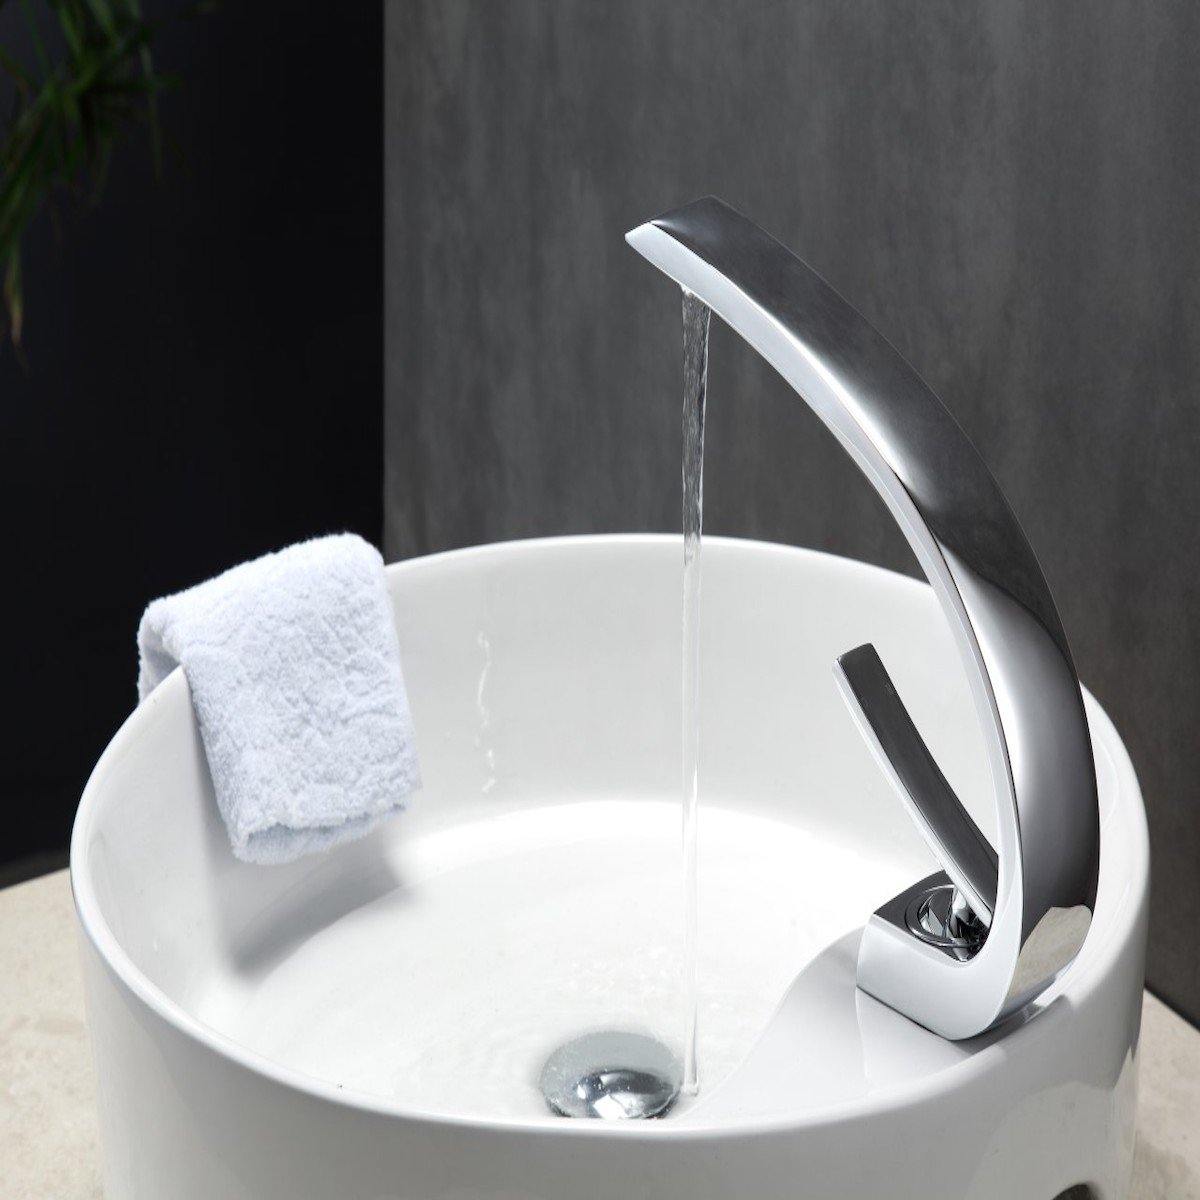 KubeBath Aqua Arcco Single Lever Modern Bathroom Vanity faucet - Chrome AFB1638CH